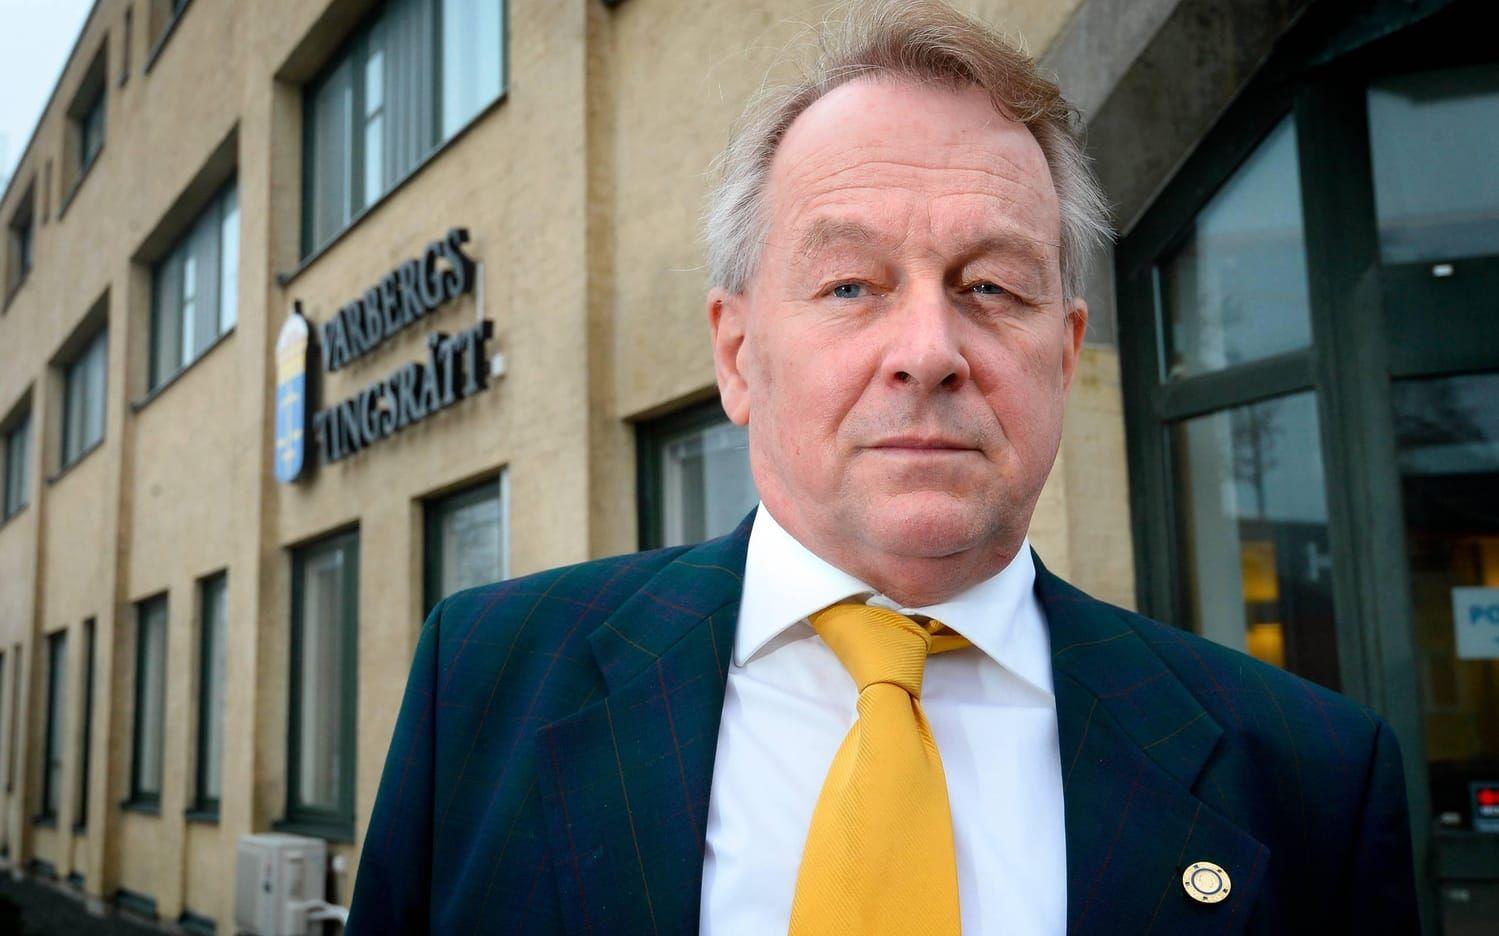 Den moderate kommunpolitikern Sven Andersson känner sig oskyldigt anklagad för snatteri, men medger att han har tagit korsord ut tidningar på Hotell Gästis och Hallands Nyheters redaktion.